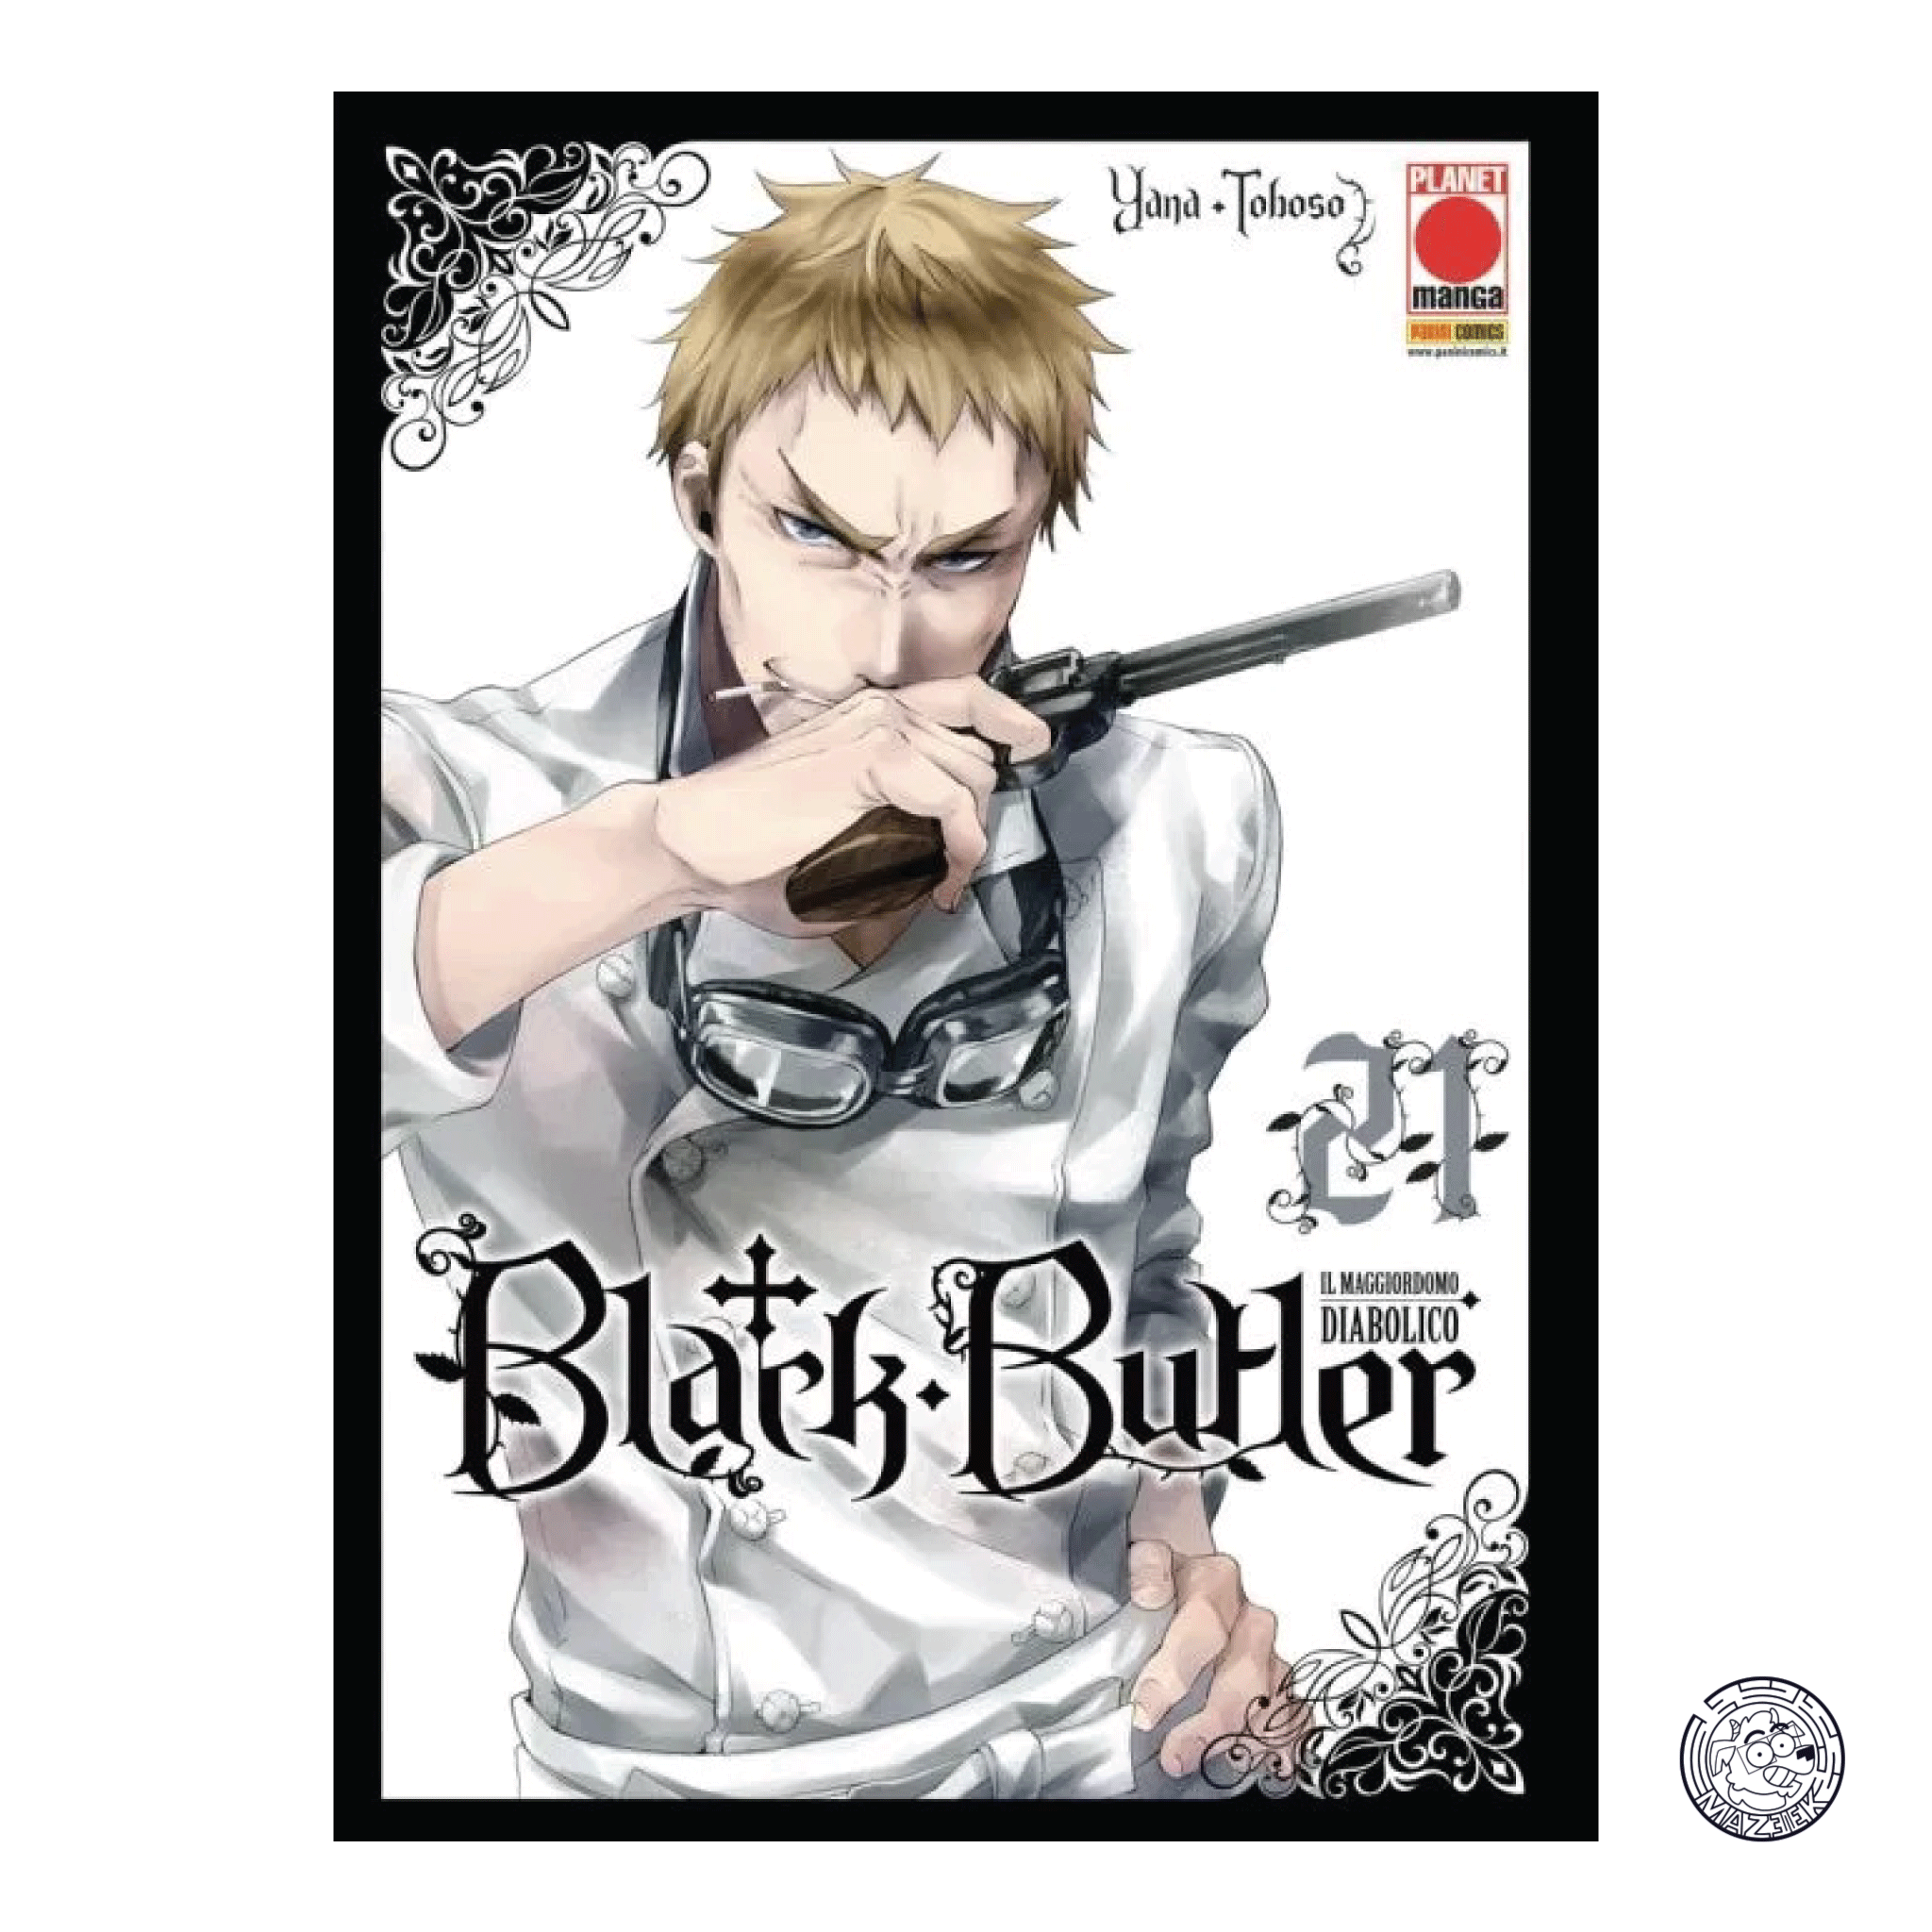 Black Butler - il Maggiordomo Diabolico 21 - Prima Ristampa